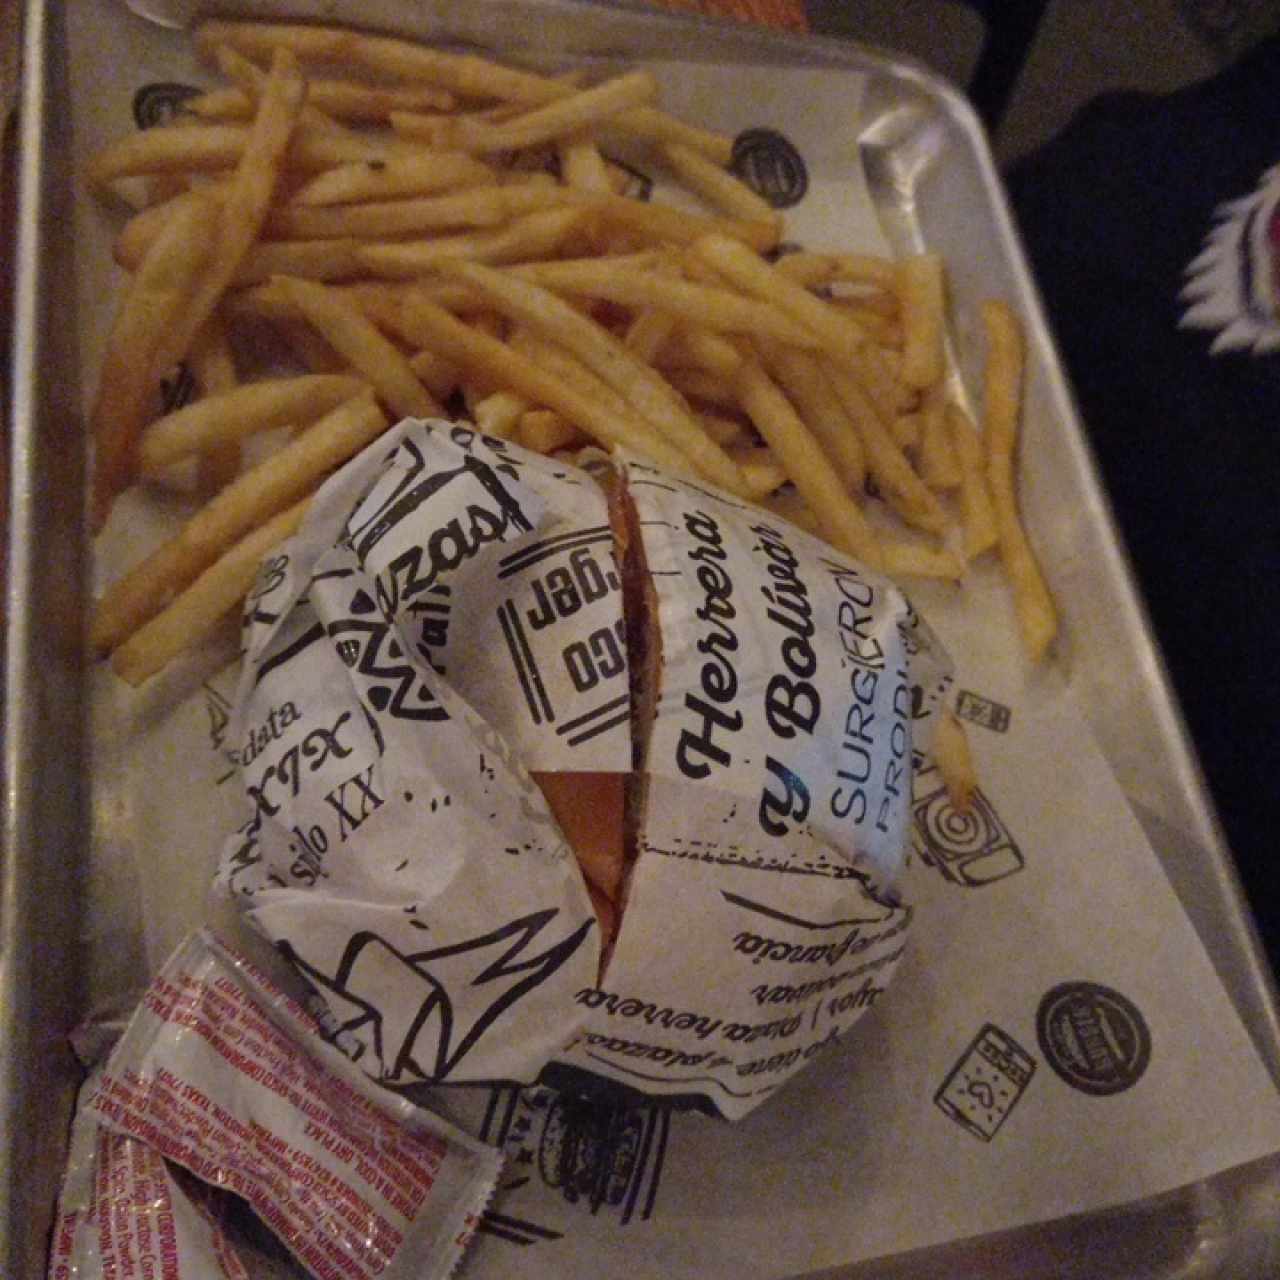 Premium Burgers - La Monumental